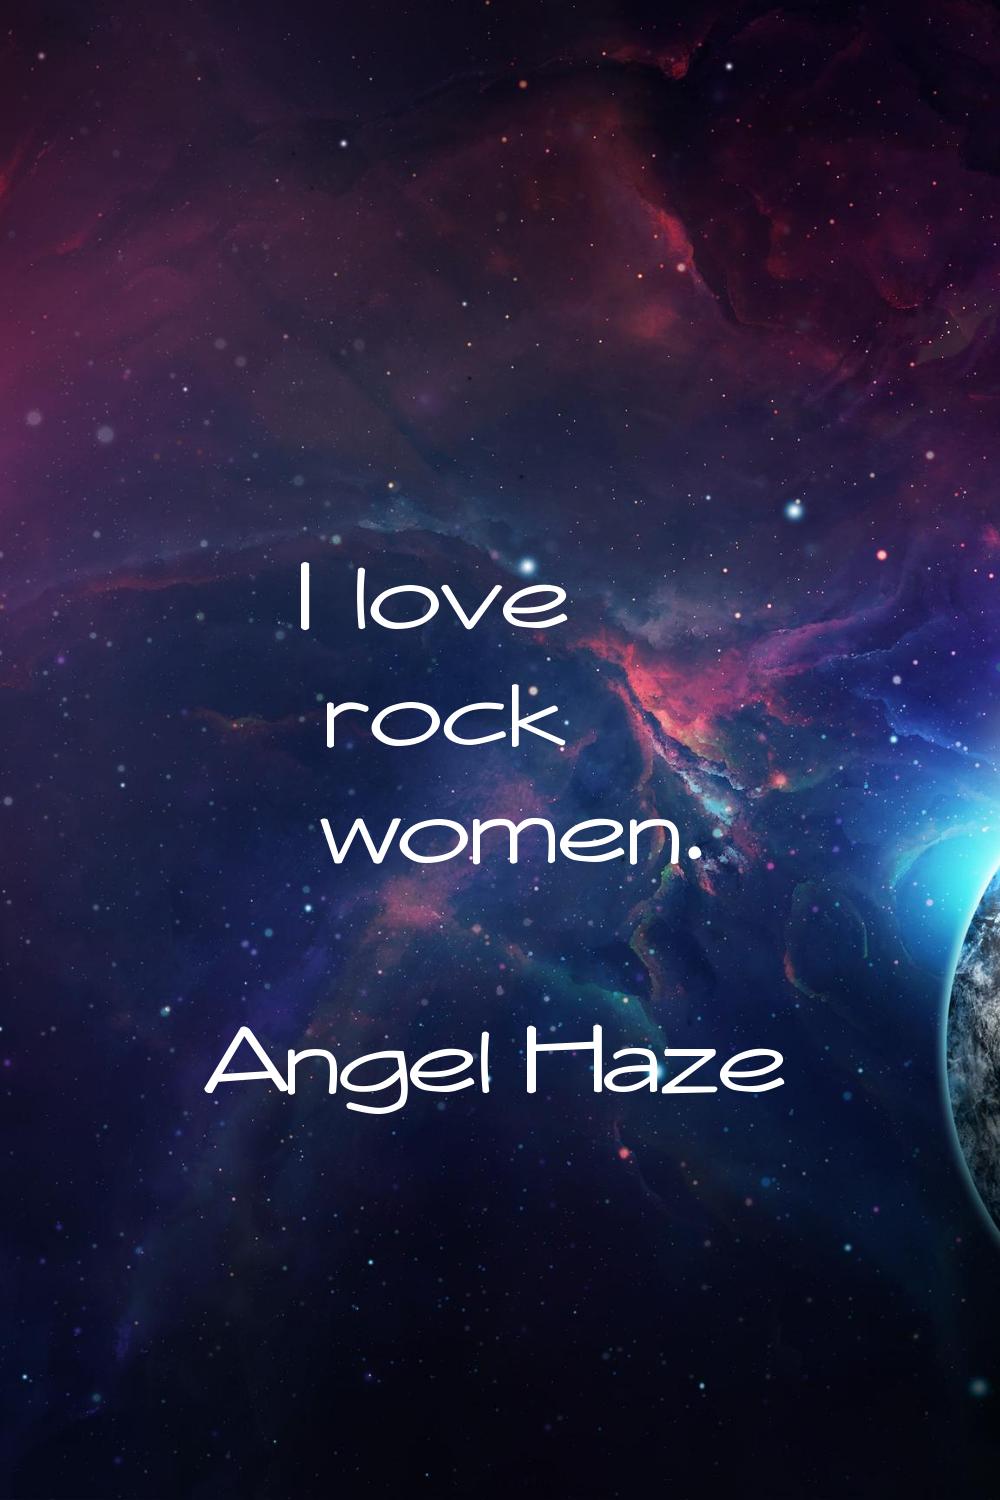 I love rock women.